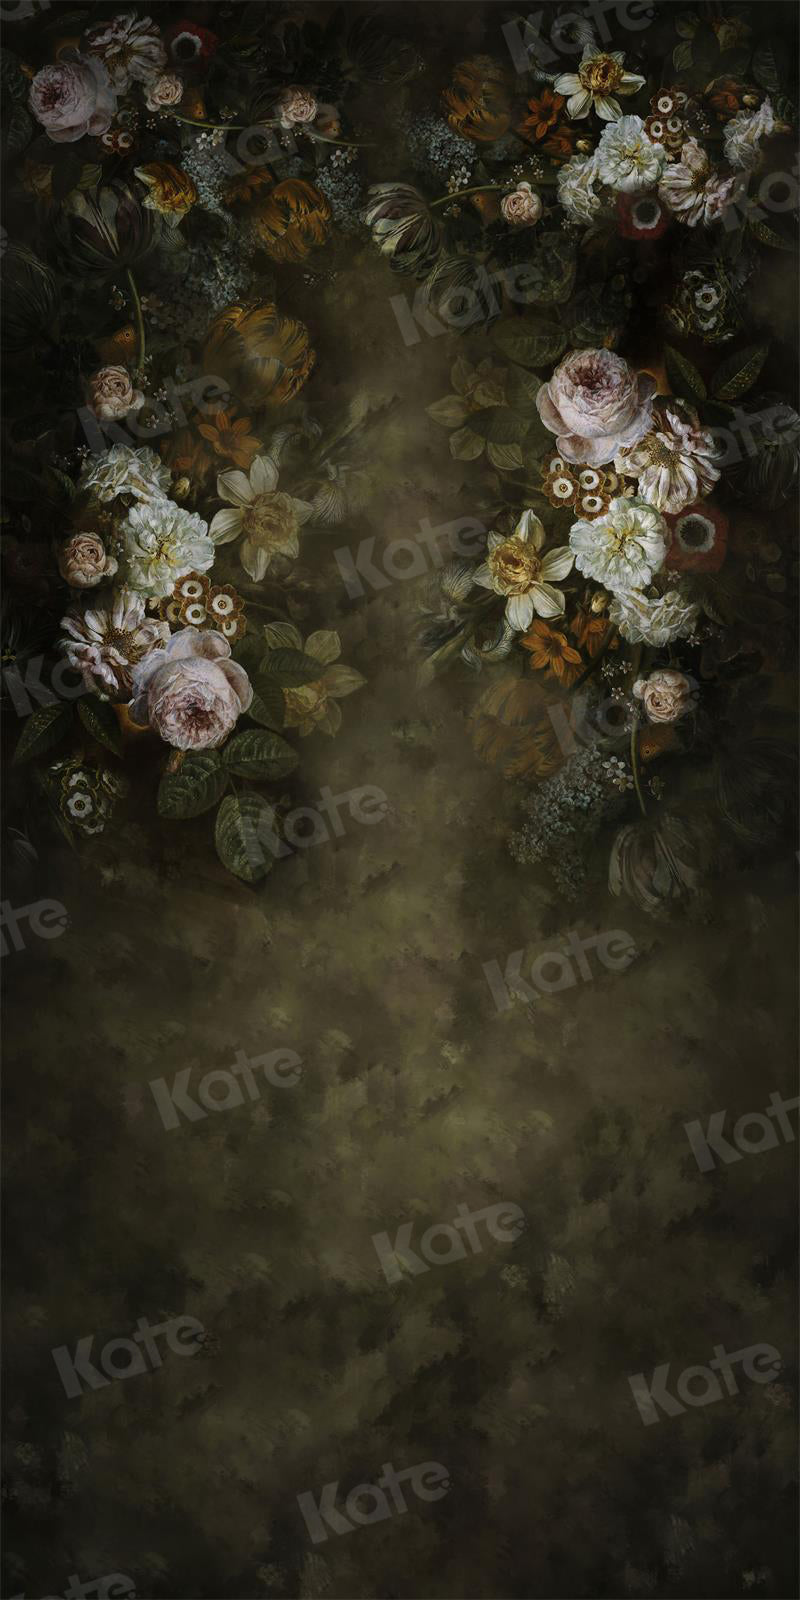 Kate Sweep Vintage Blumen Boudoir Hintergrund für Fotografie